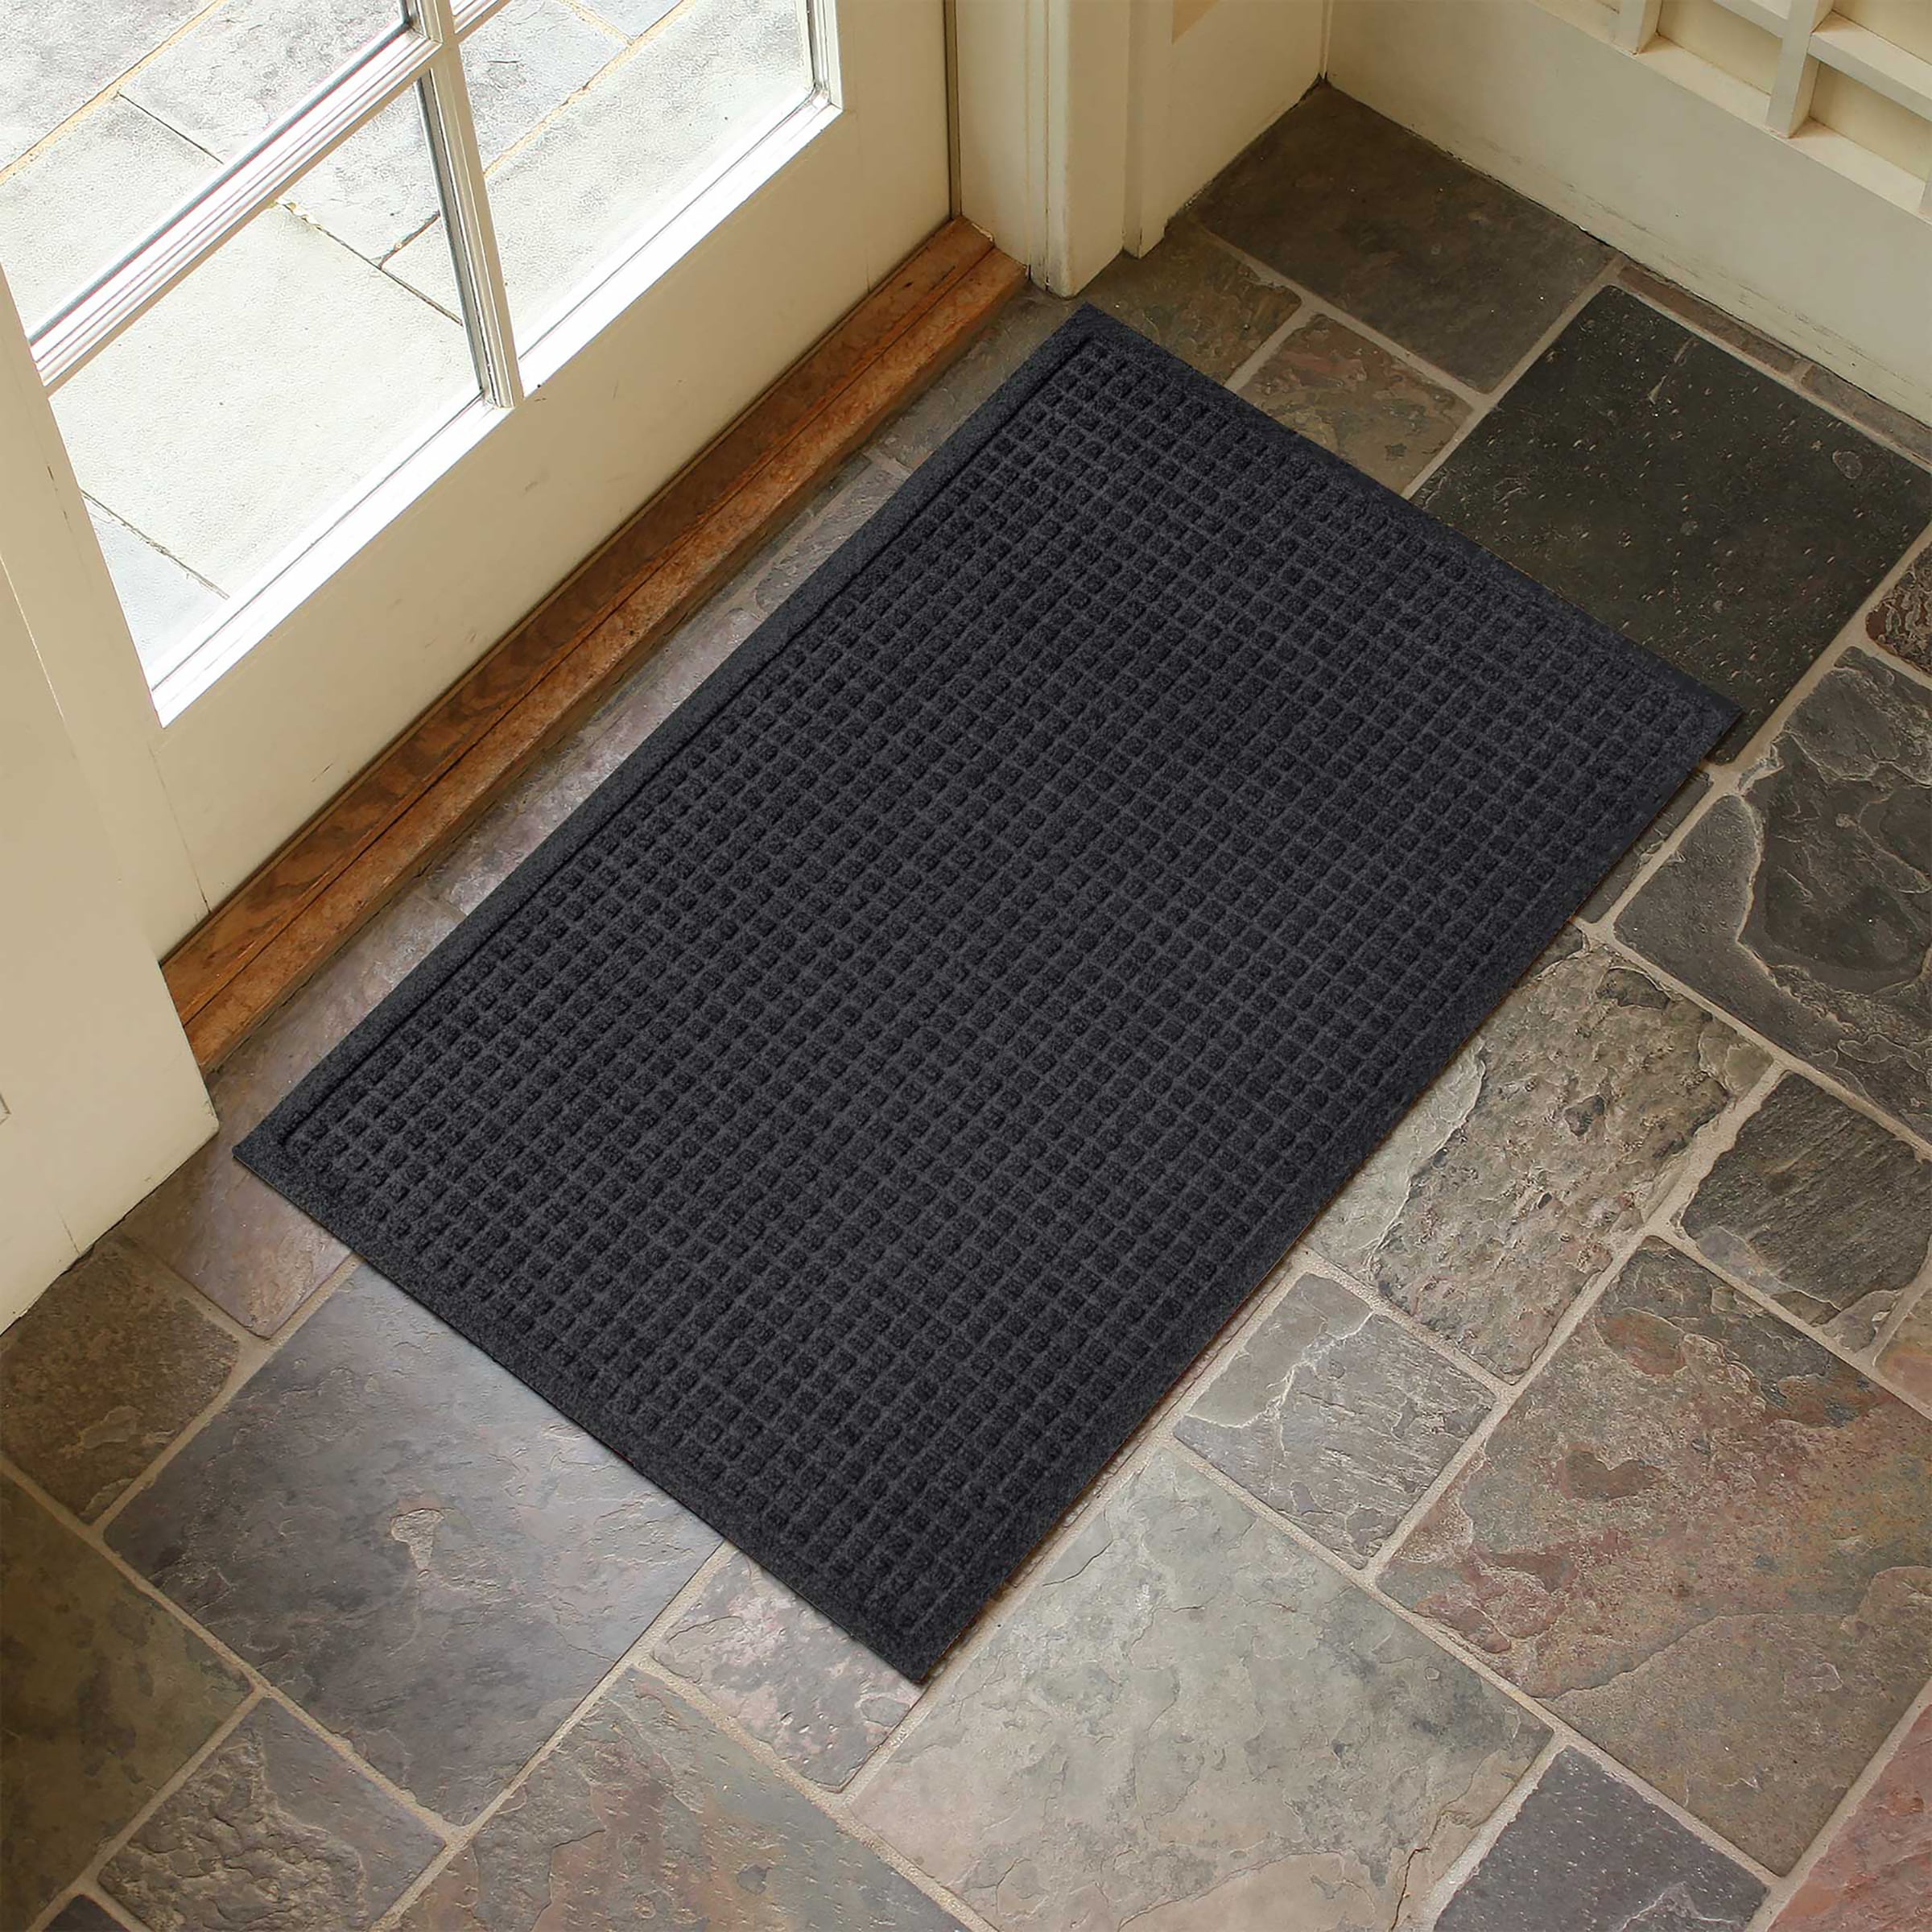 Waterhog Indoor/Outdoor Geometric Half-Round Doormat, 24 x 39 - Evergreen